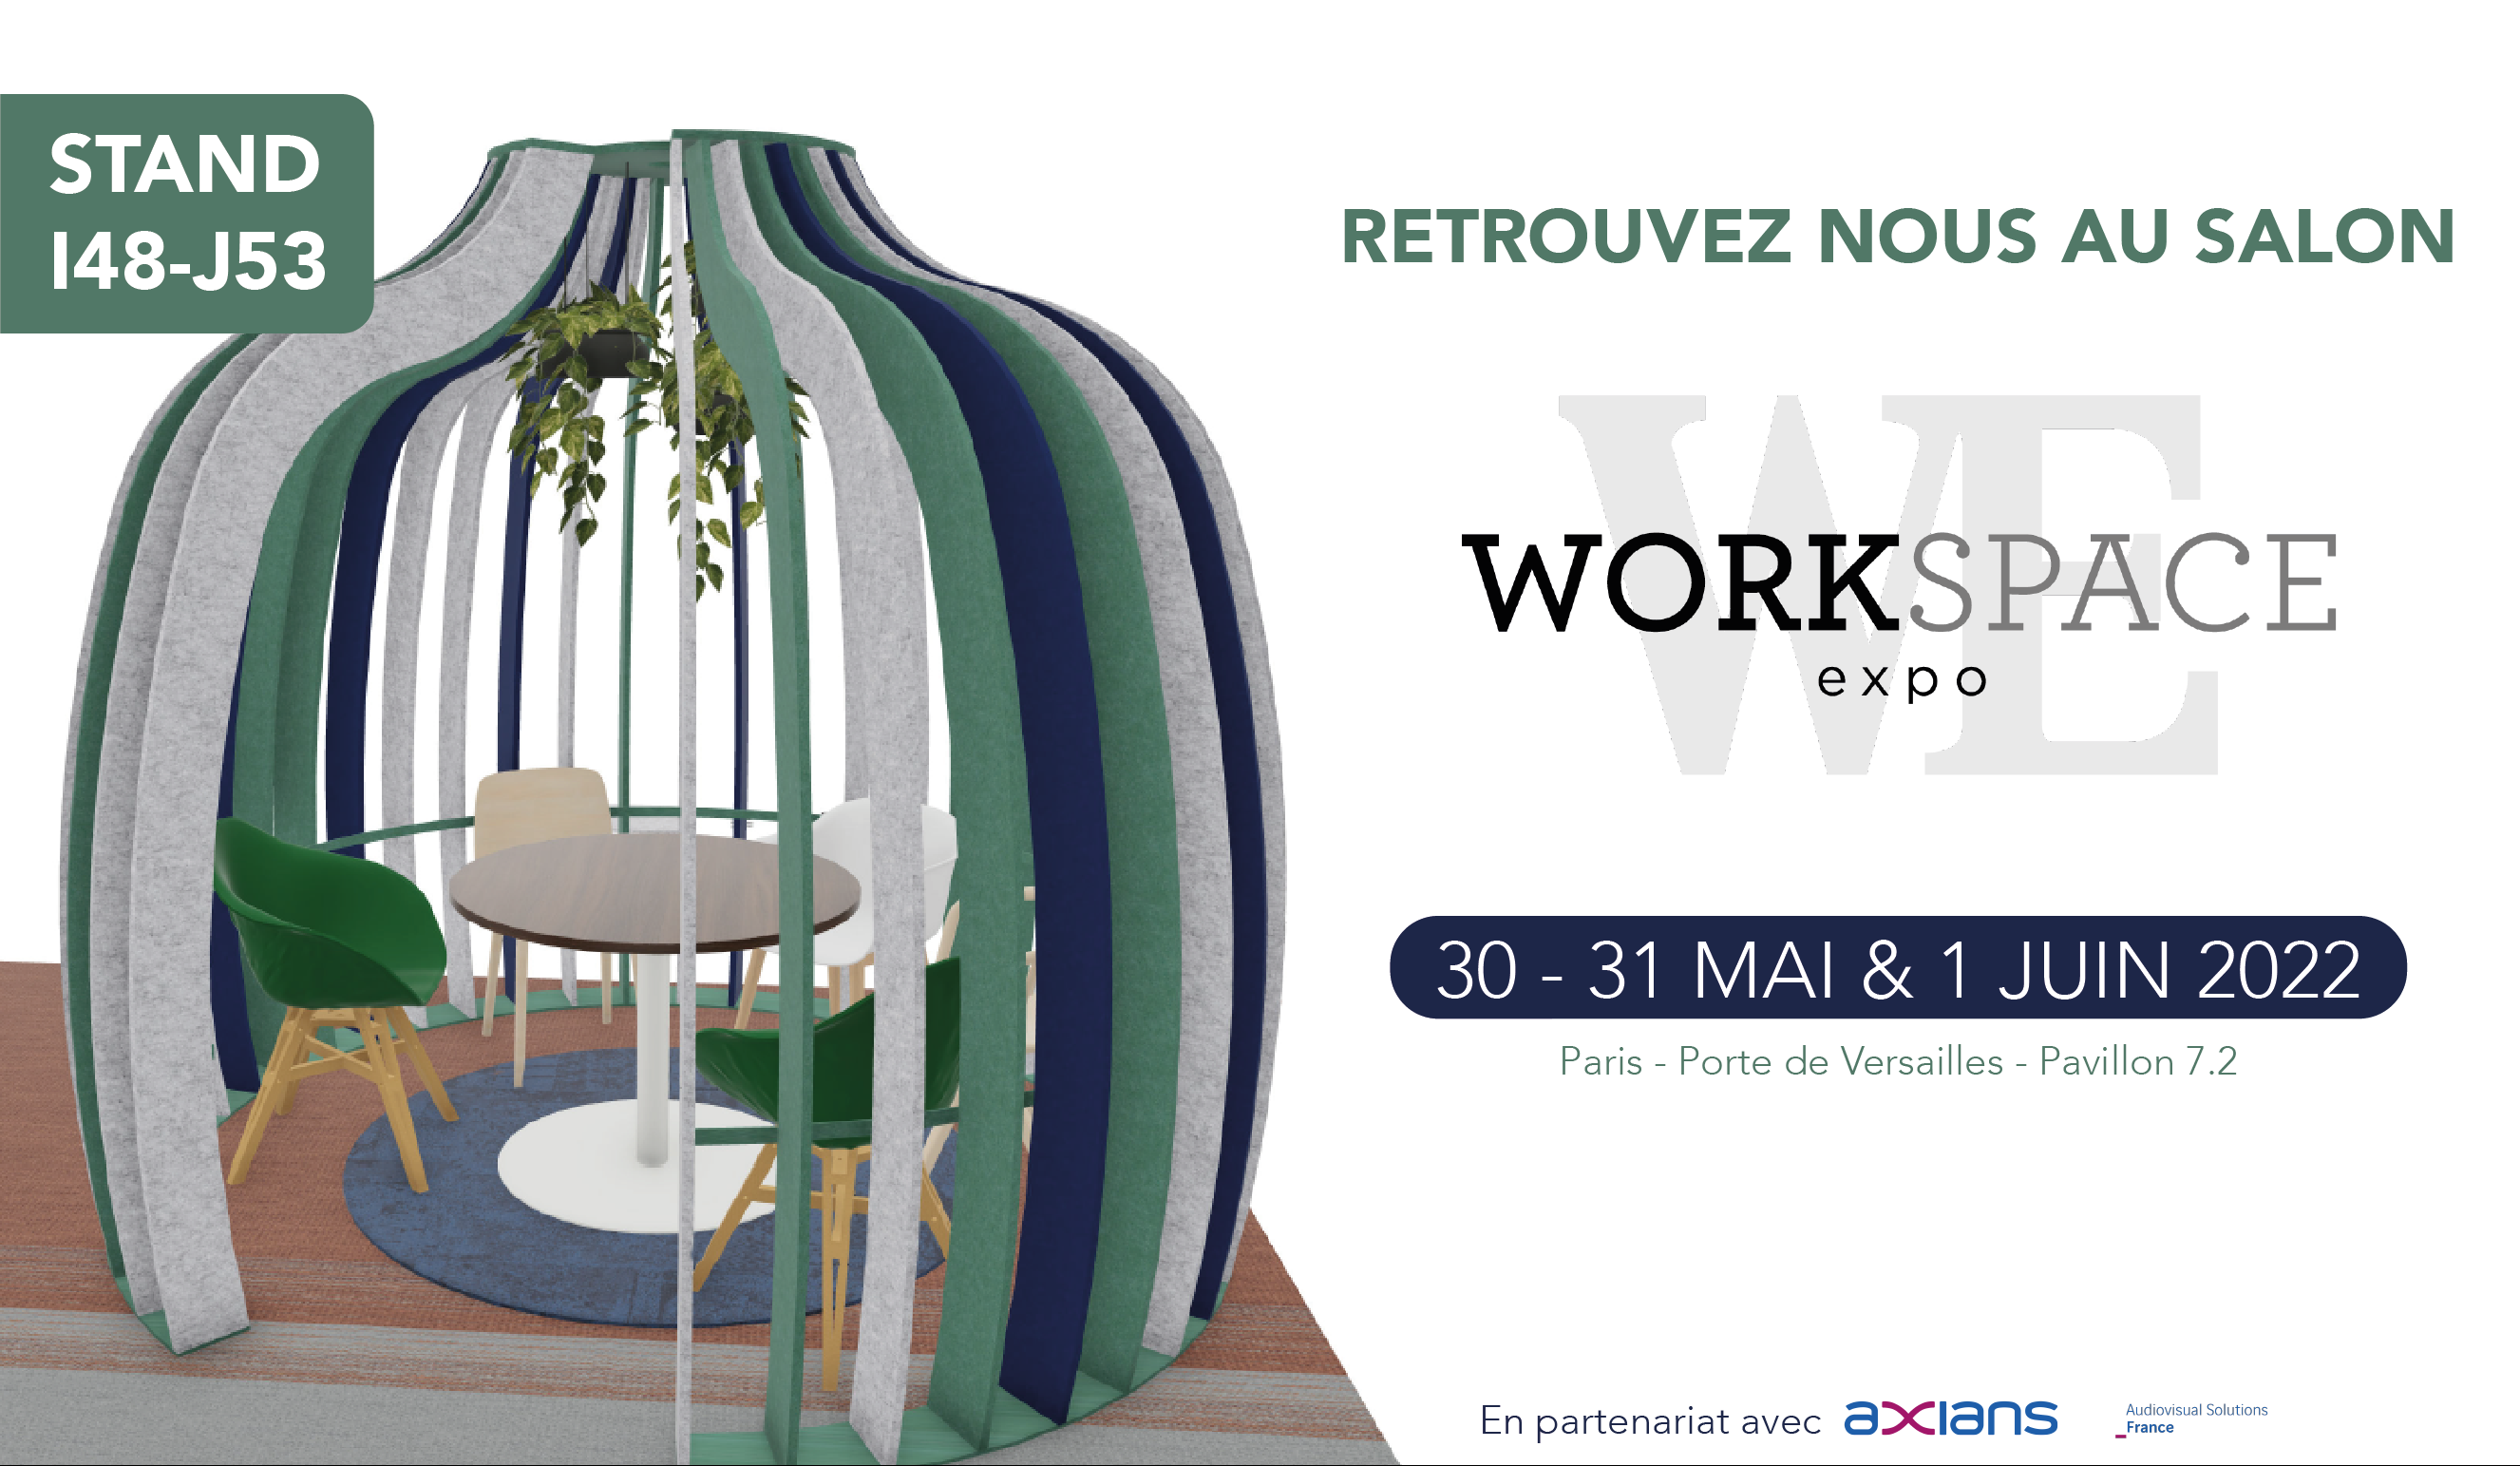 RETROUVEZ L'EQUIPE SEREM AU SALON WORKSPACE EXPO DE PARIS